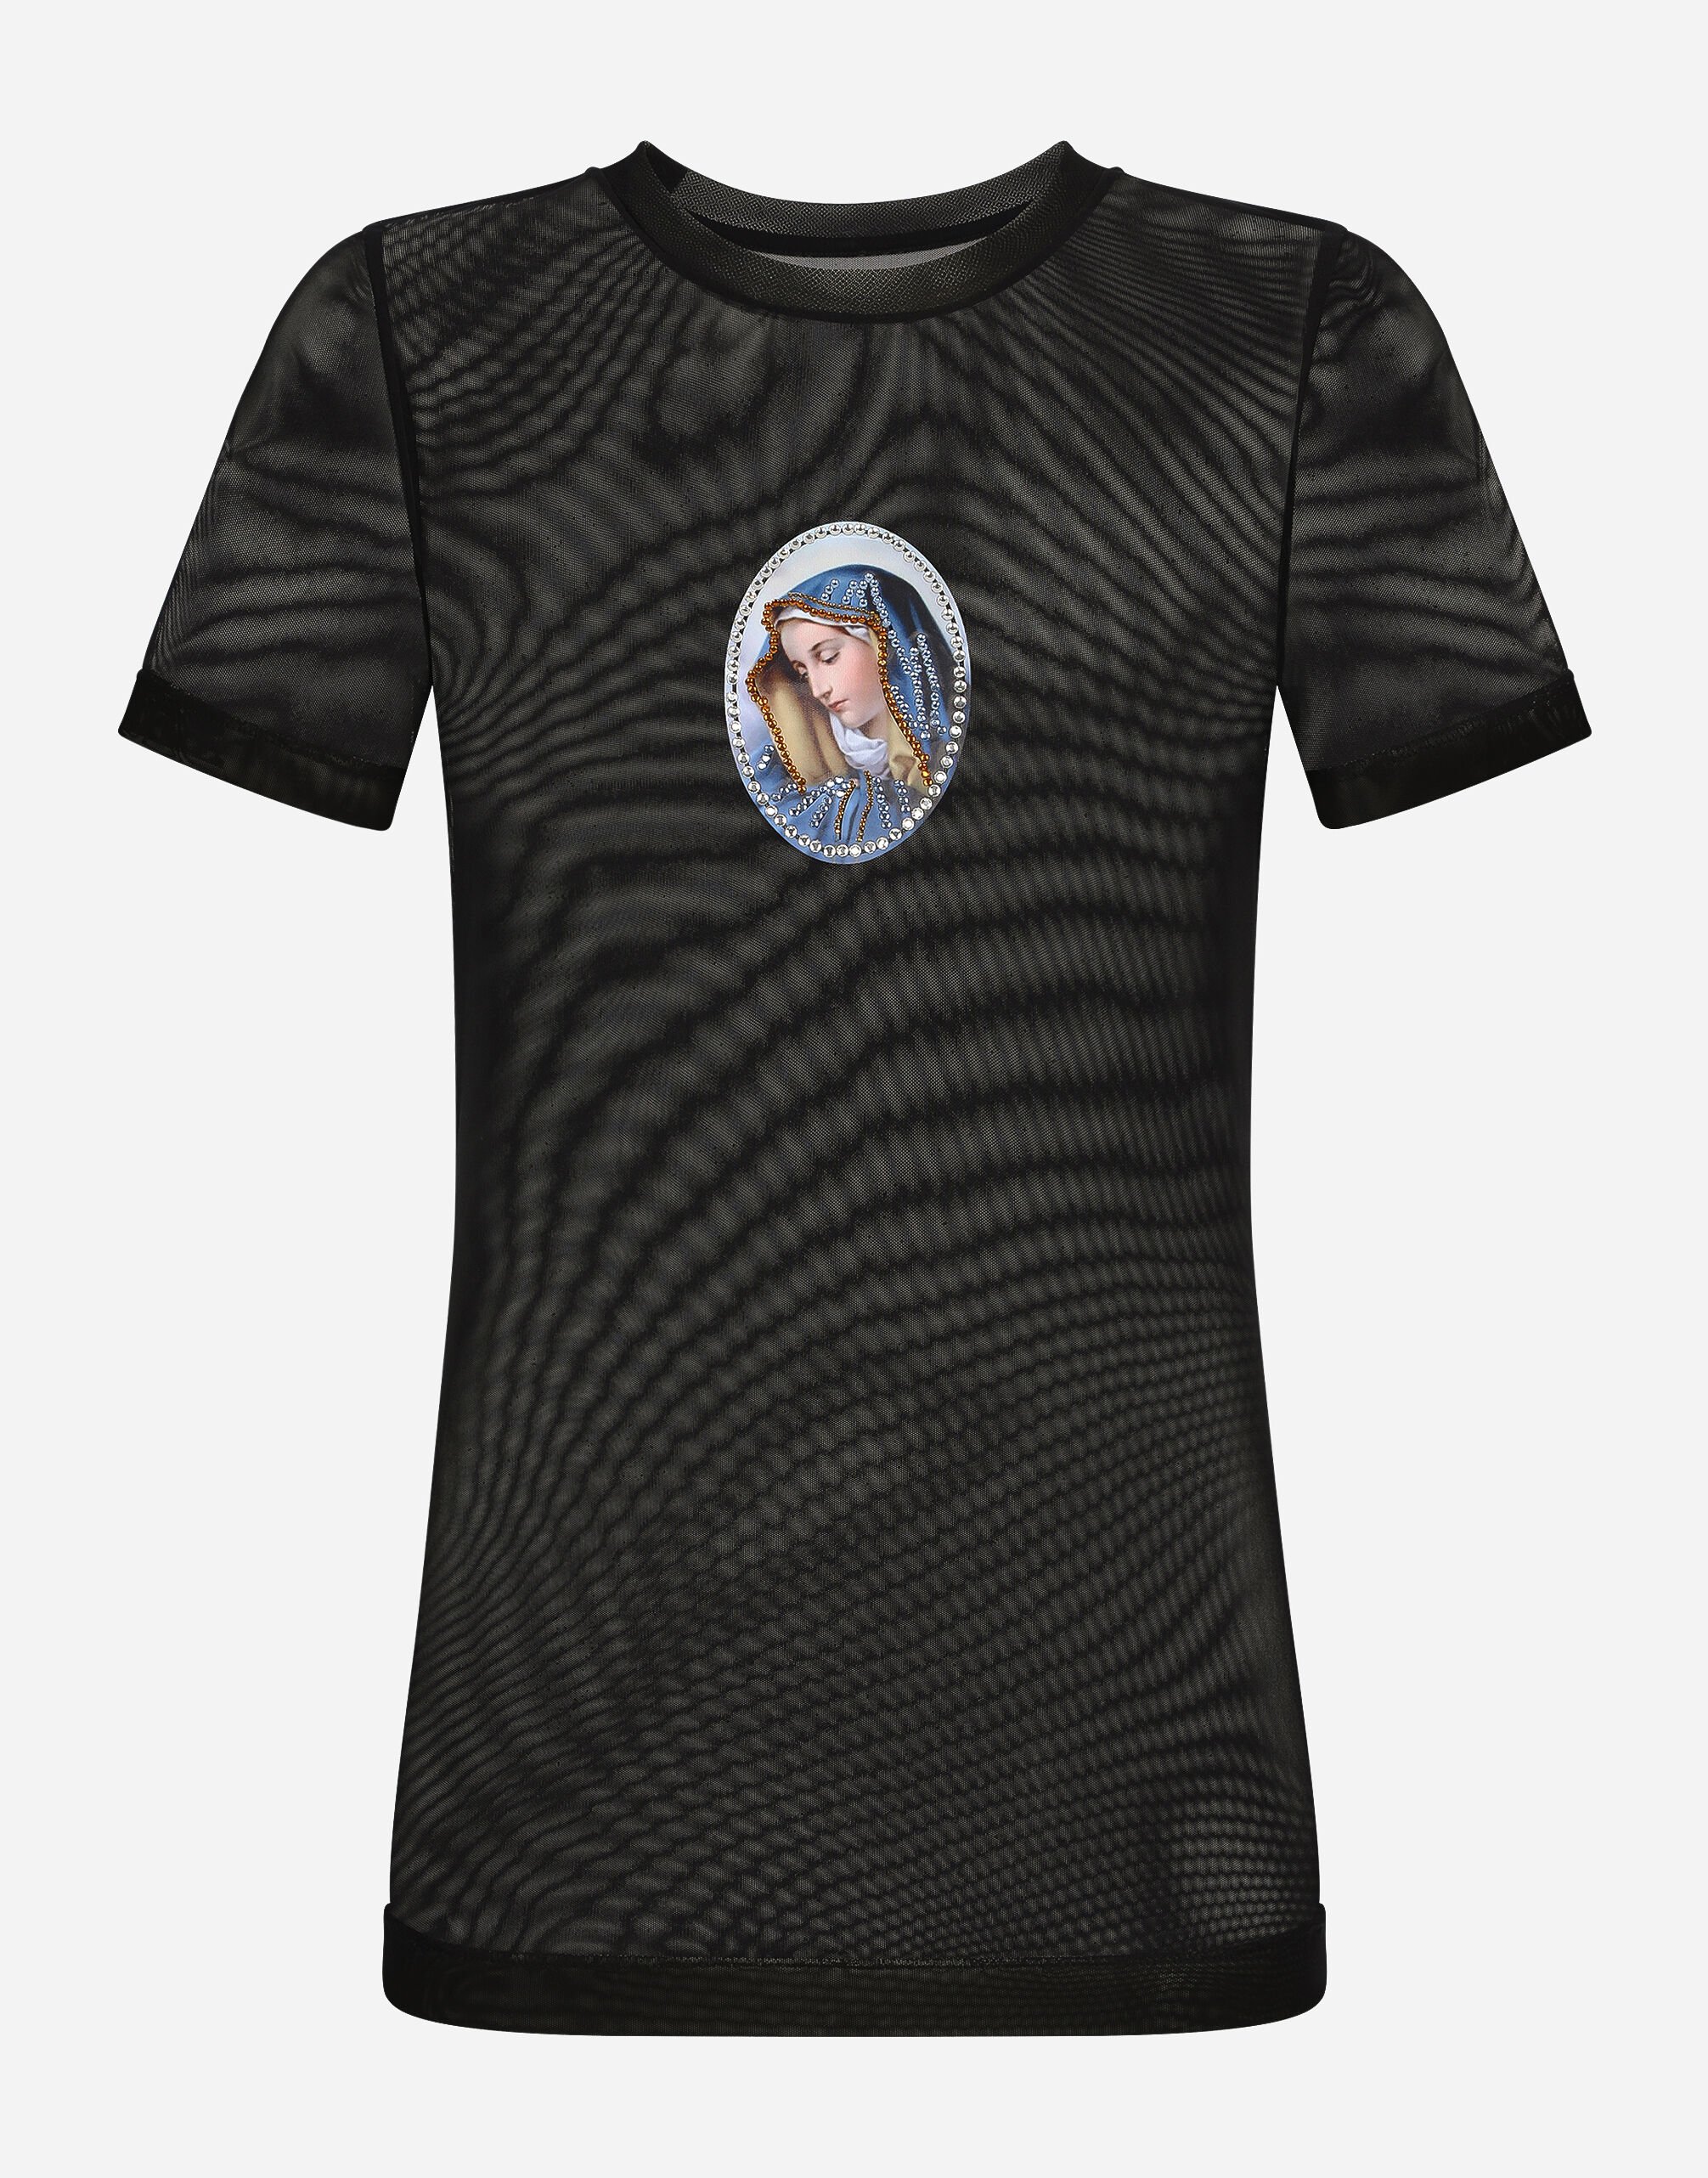 Dolce & Gabbana Camiseta de tul con parche de imagen sagrada Negro VG6186VN187